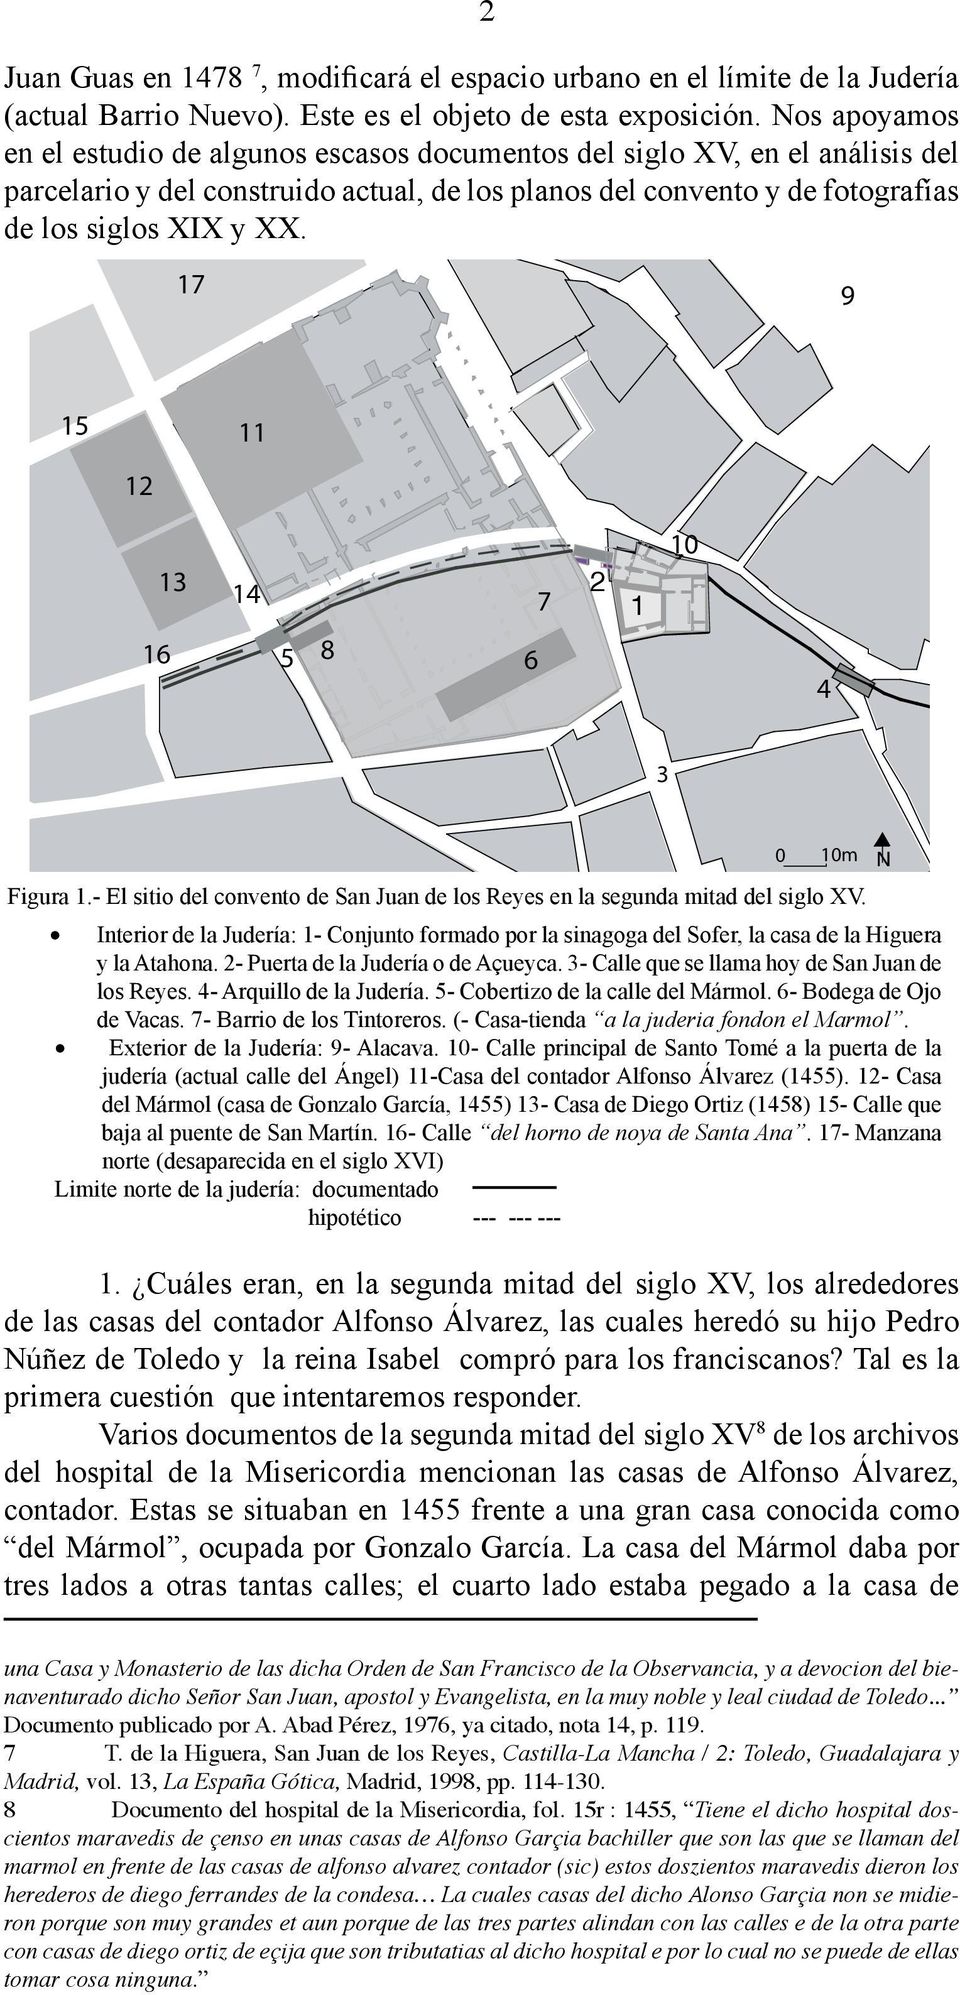 2 1 N Figura 1.- El sitio del convento de San Juan de los Reyes en la segunda mitad del siglo XV.